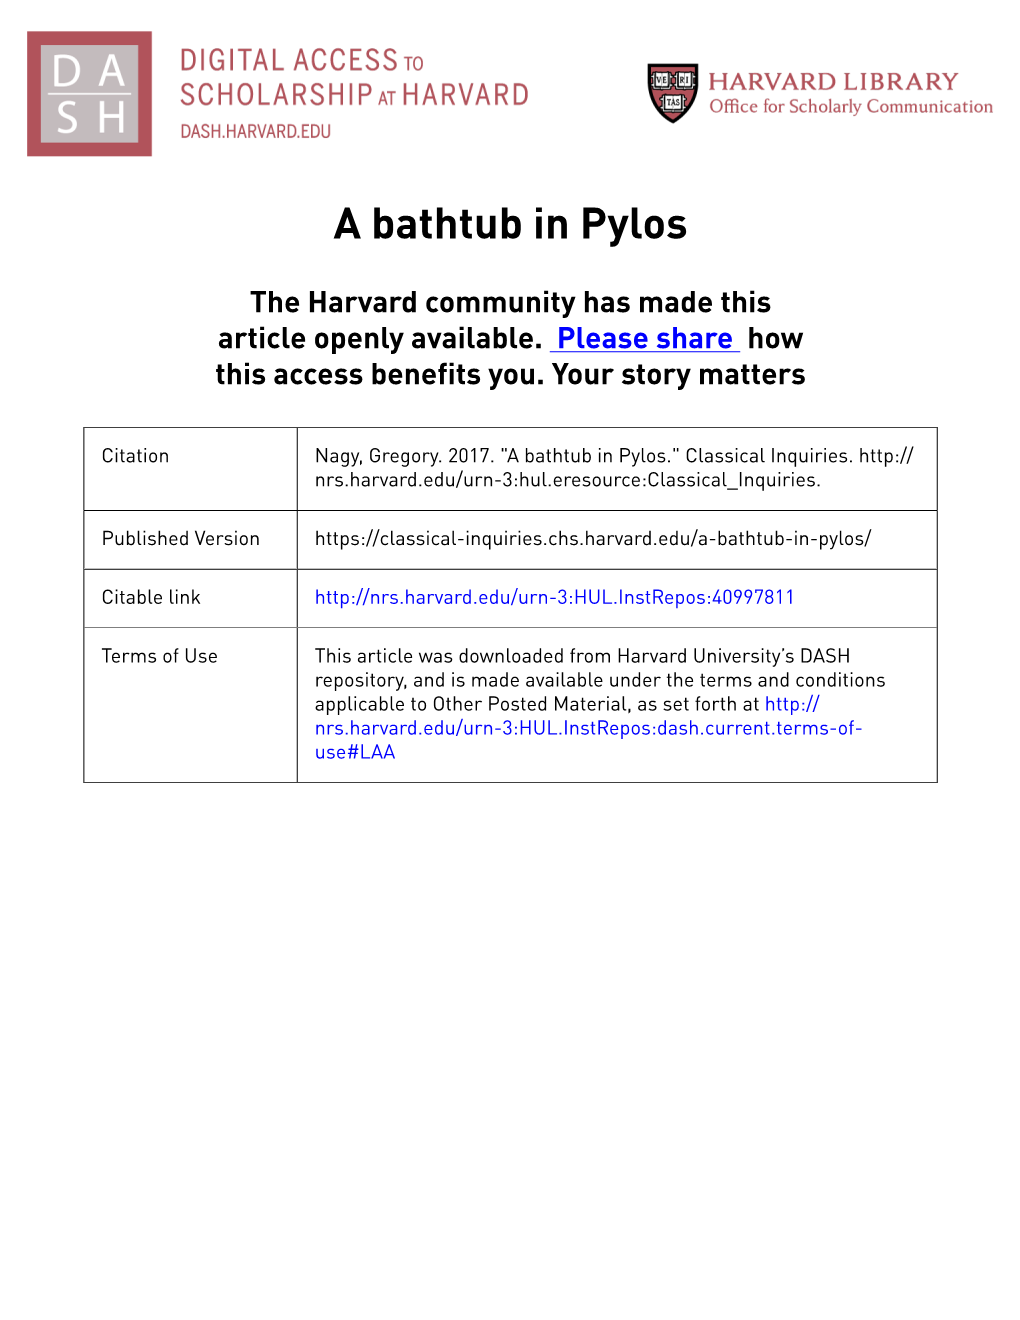 A Bathtub in Pylos